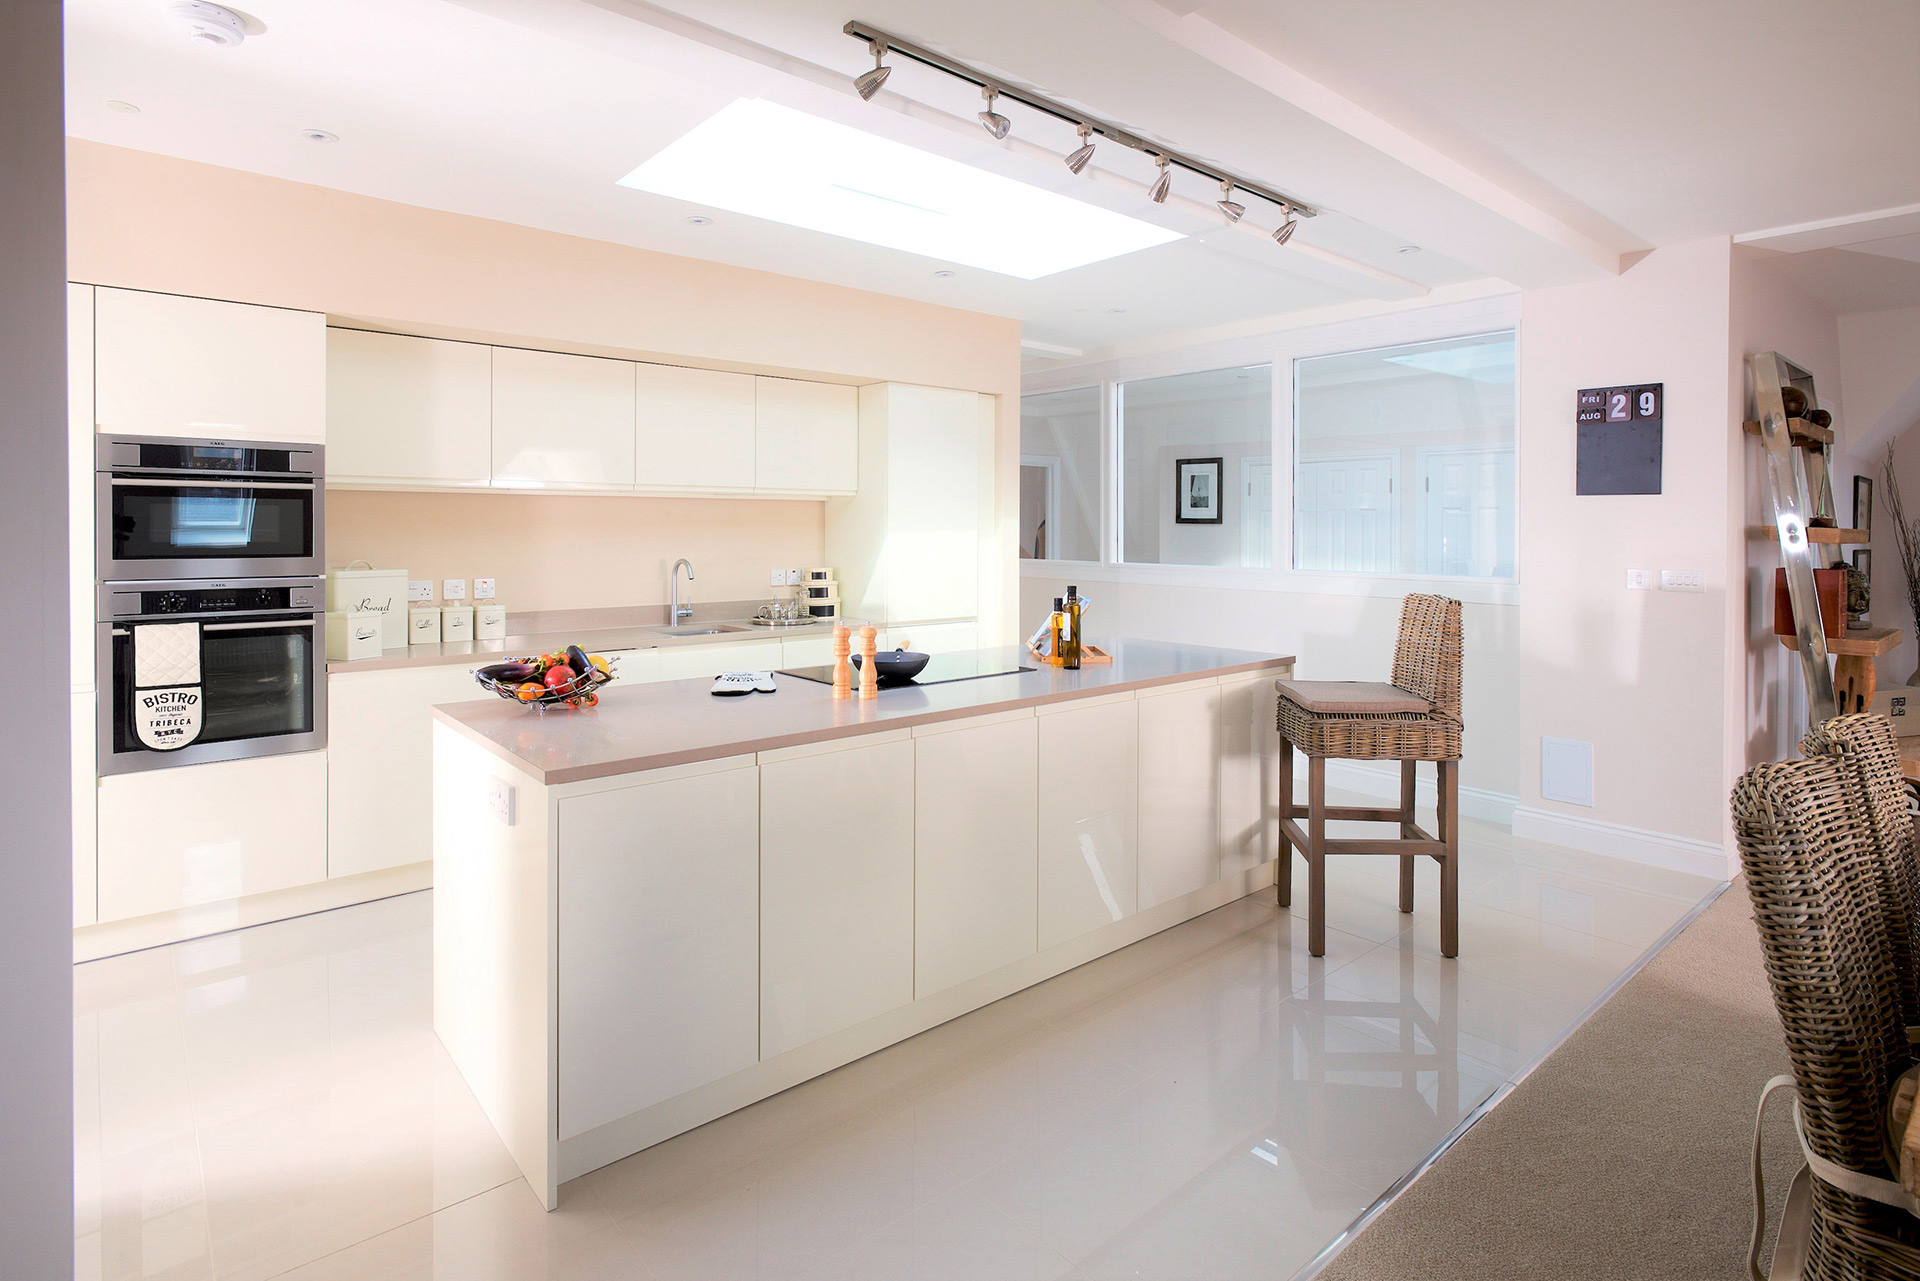 modern light airy kitchen with kitchen island